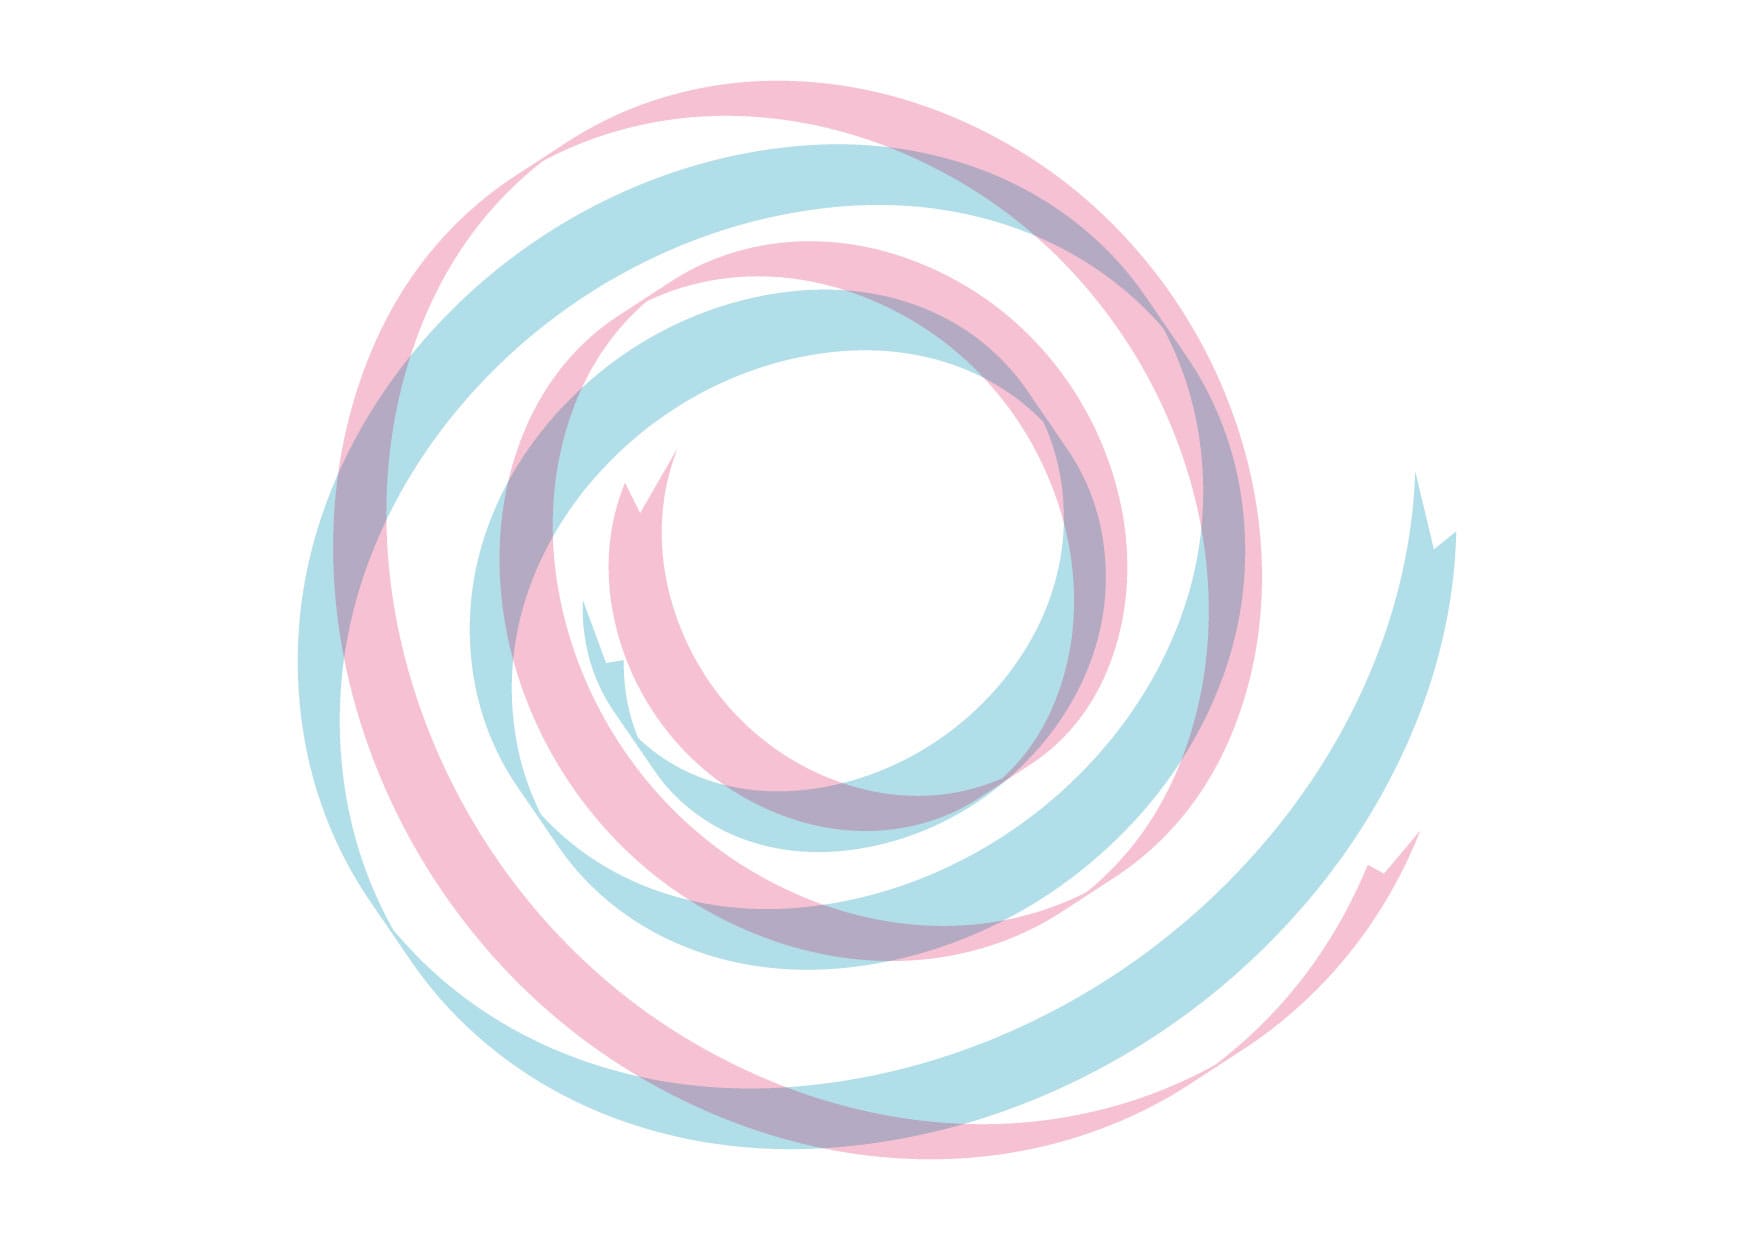 可愛いイラスト無料 リボン 背景 カール ピンク色 青色 Free Illustration Ribbon Background Curl Pink Blue 公式 イラストダウンロード